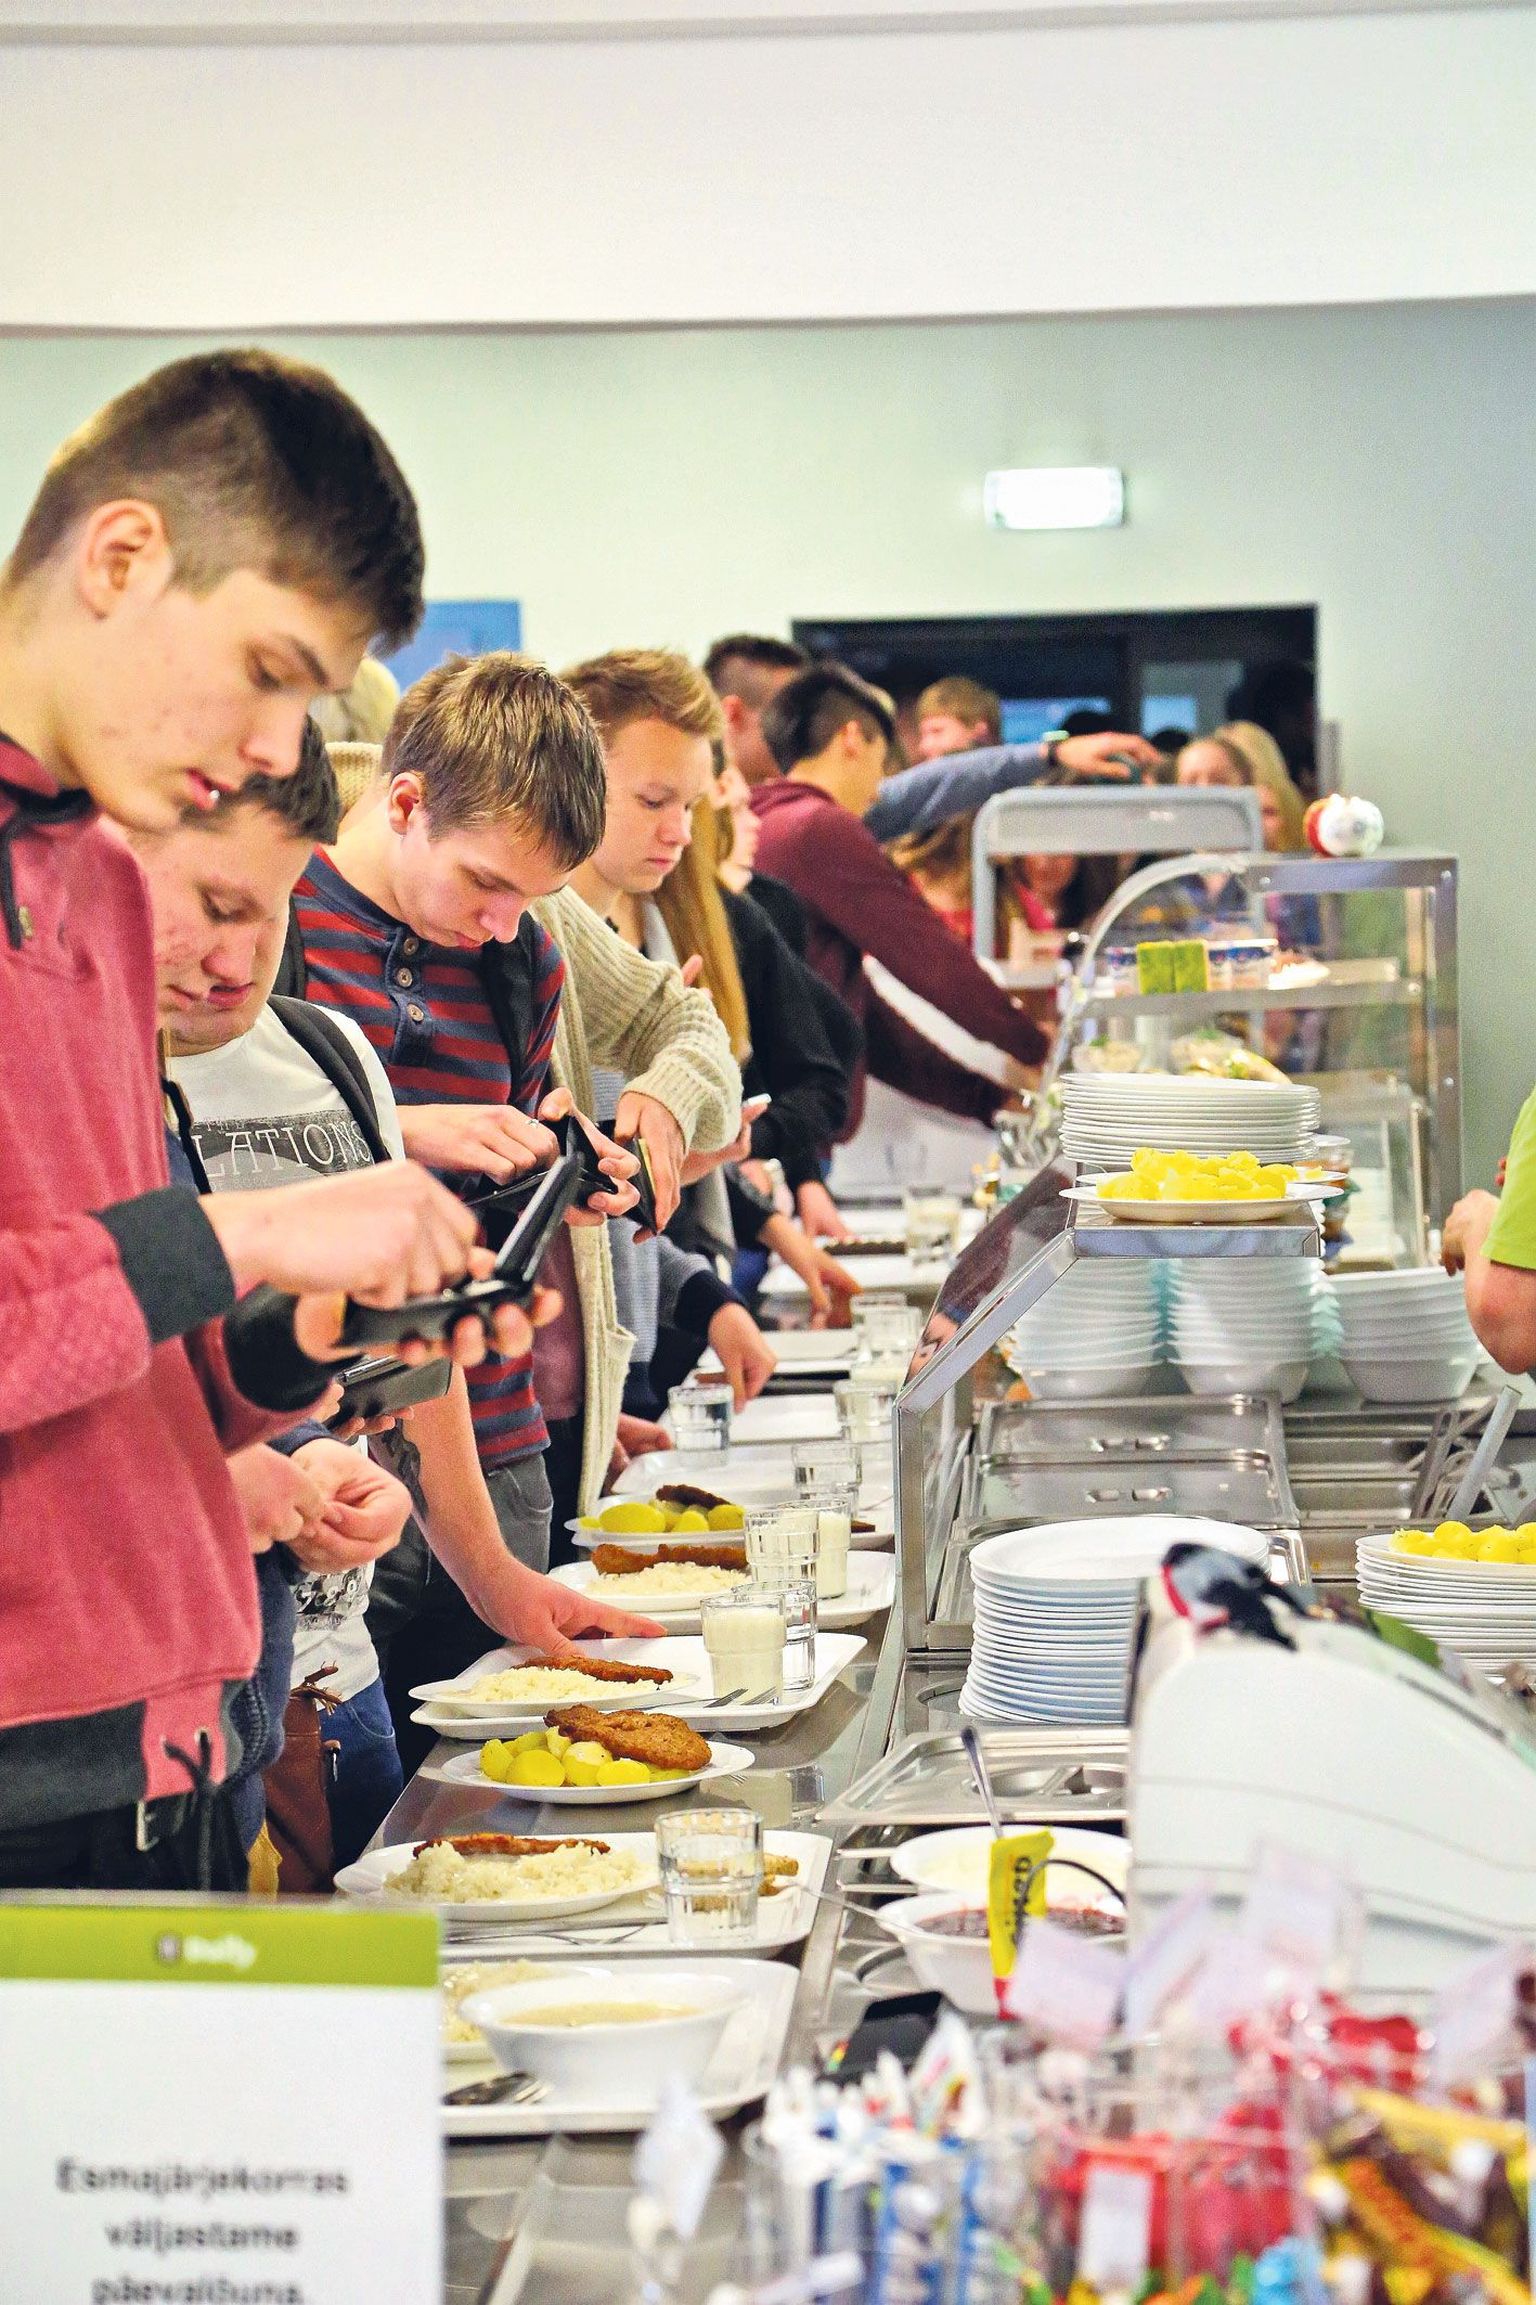 Jaan Poska gümnaasium on üks neist, kus õpilased said seni oma lõunasöögi kätte toidutalongide eest. Sügisel hakkavad Tartu koolid aga tasapisi sisse seadma elektroonilist süsteemi, mis peab sööjate üle täpset arvestust.